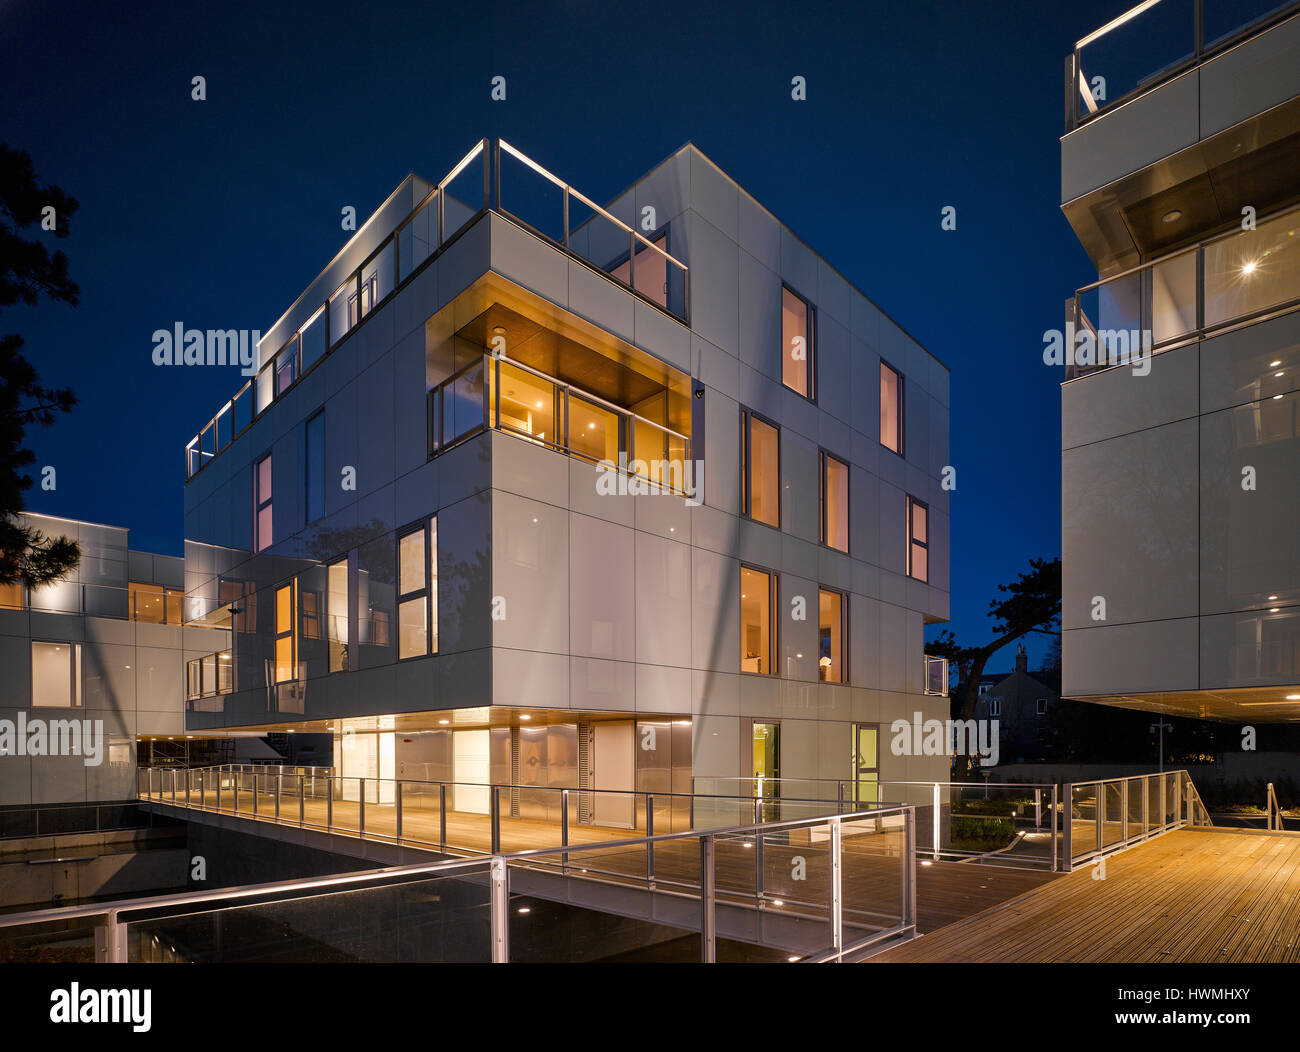 Nachtansicht von außen zeigen beleuchtete Innenräume und Gehweg. Dunluce Apartments, Ballsbridge, Irland. Architekt: Derek Tynan Architekten, 2016. Stockfoto